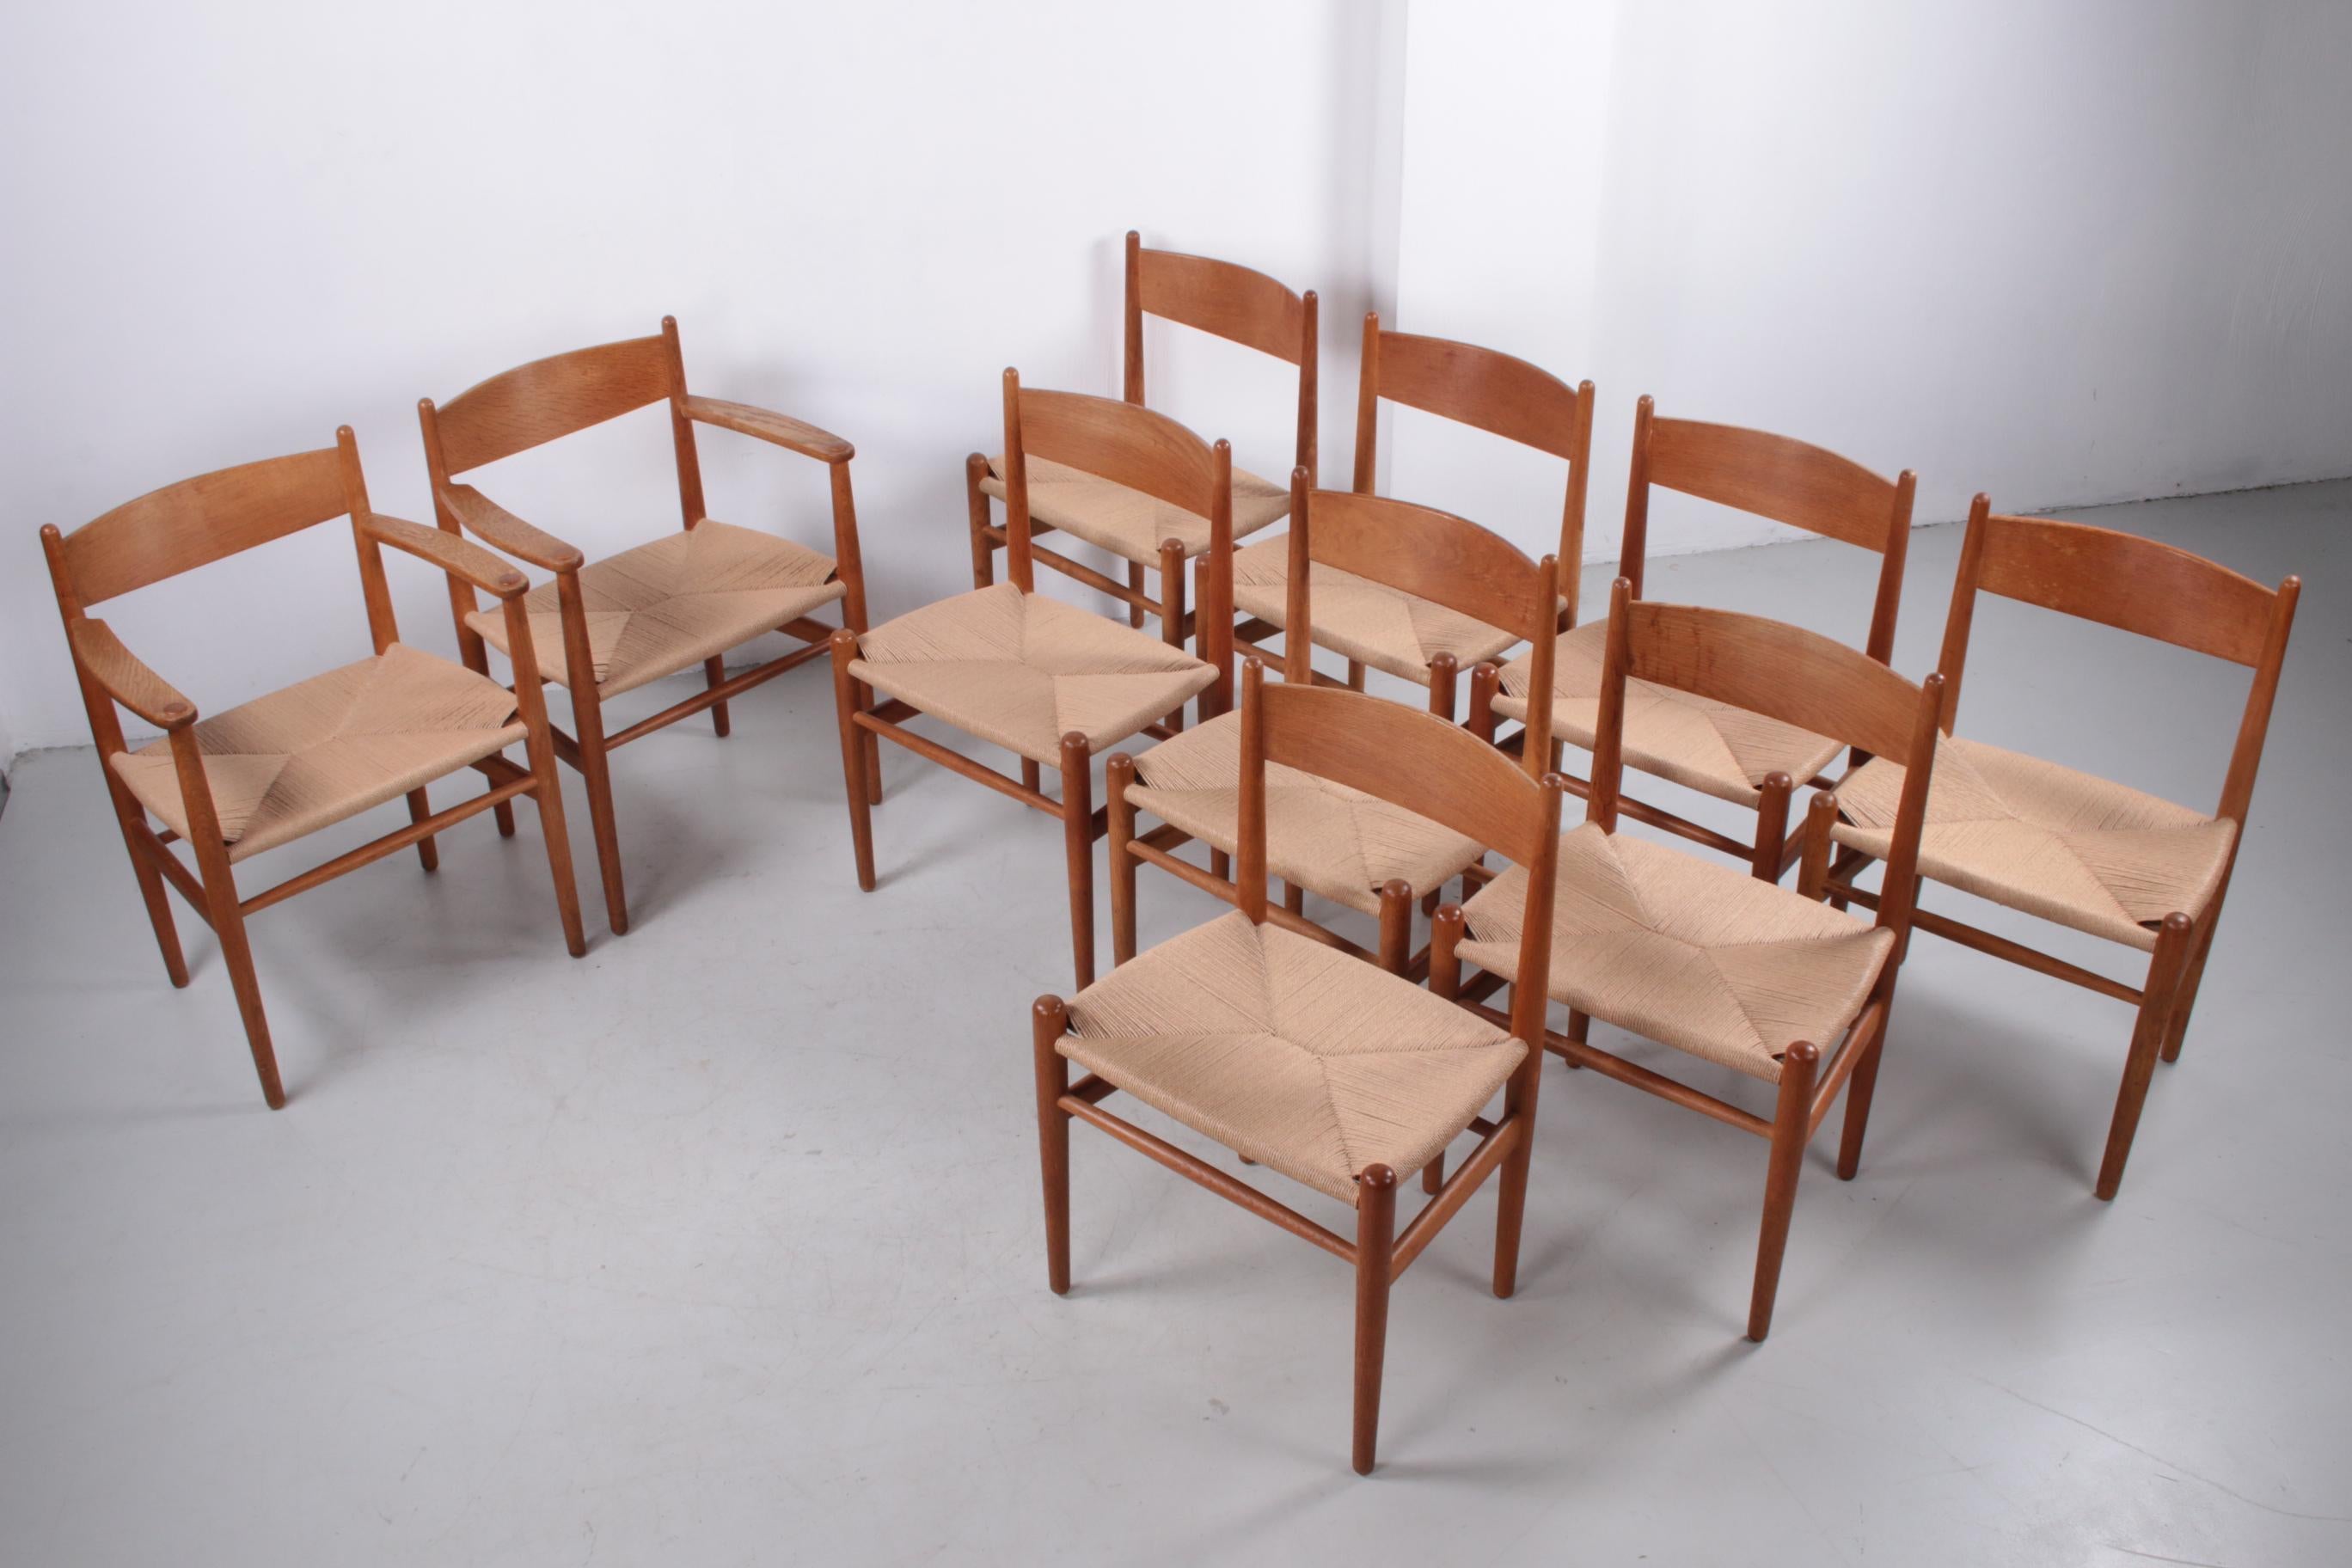 Ensemble de 10 chaises de salle à manger CH36' et CH37 par Hans Wegner pour Carl Hansen & Søn, Danemark.

La chaise de salle à manger CH36 de Hans J. Wegner est fabriquée avec une grande attention à chaque détail dans un design simple et